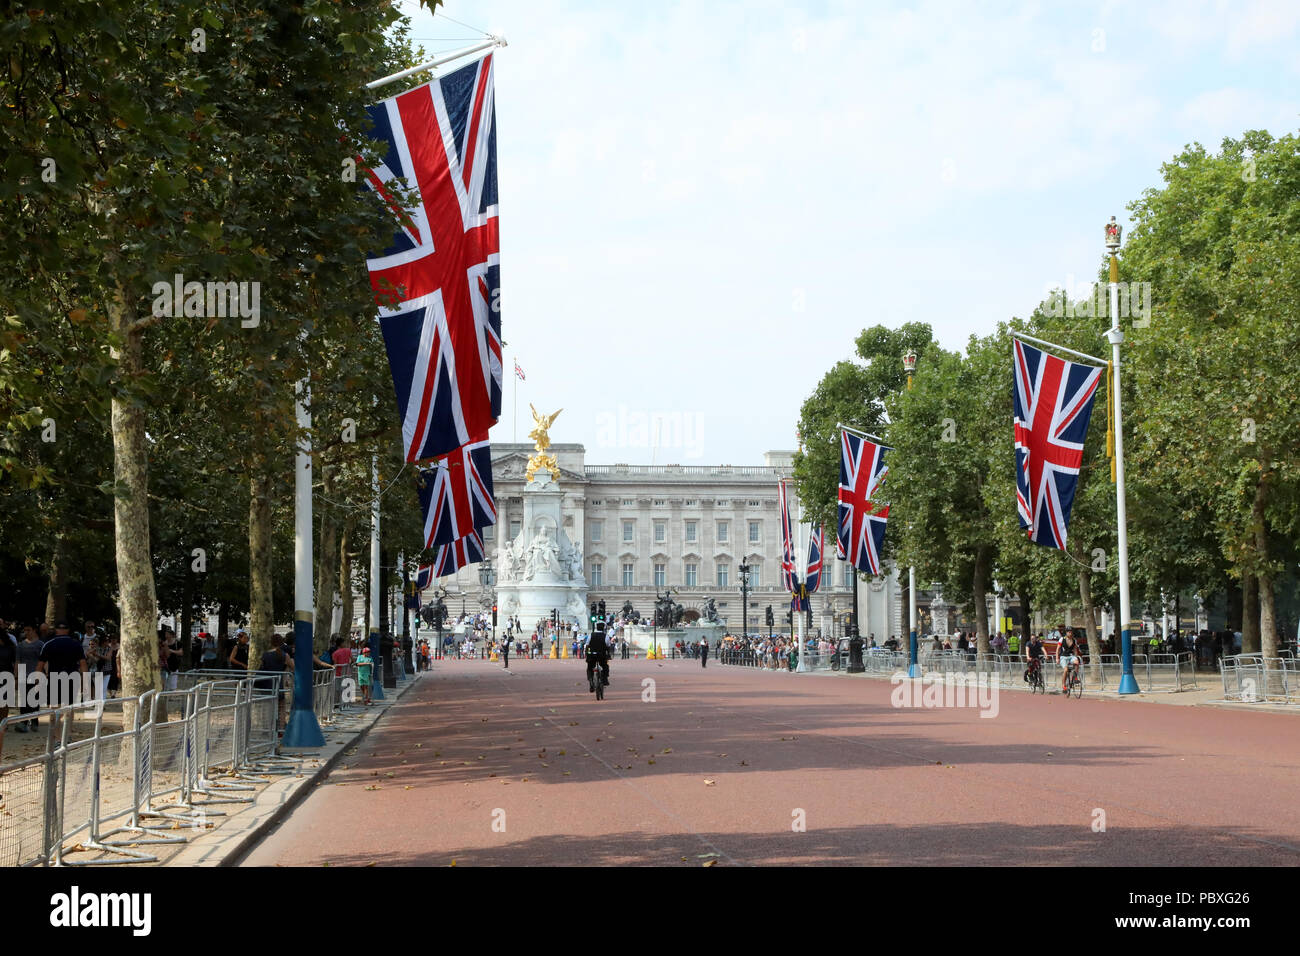 London / UK - 26 juillet 2018 : vue sur le palais de Buckingham, la résidence de la monarchie britannique, le long de la Mall Banque D'Images